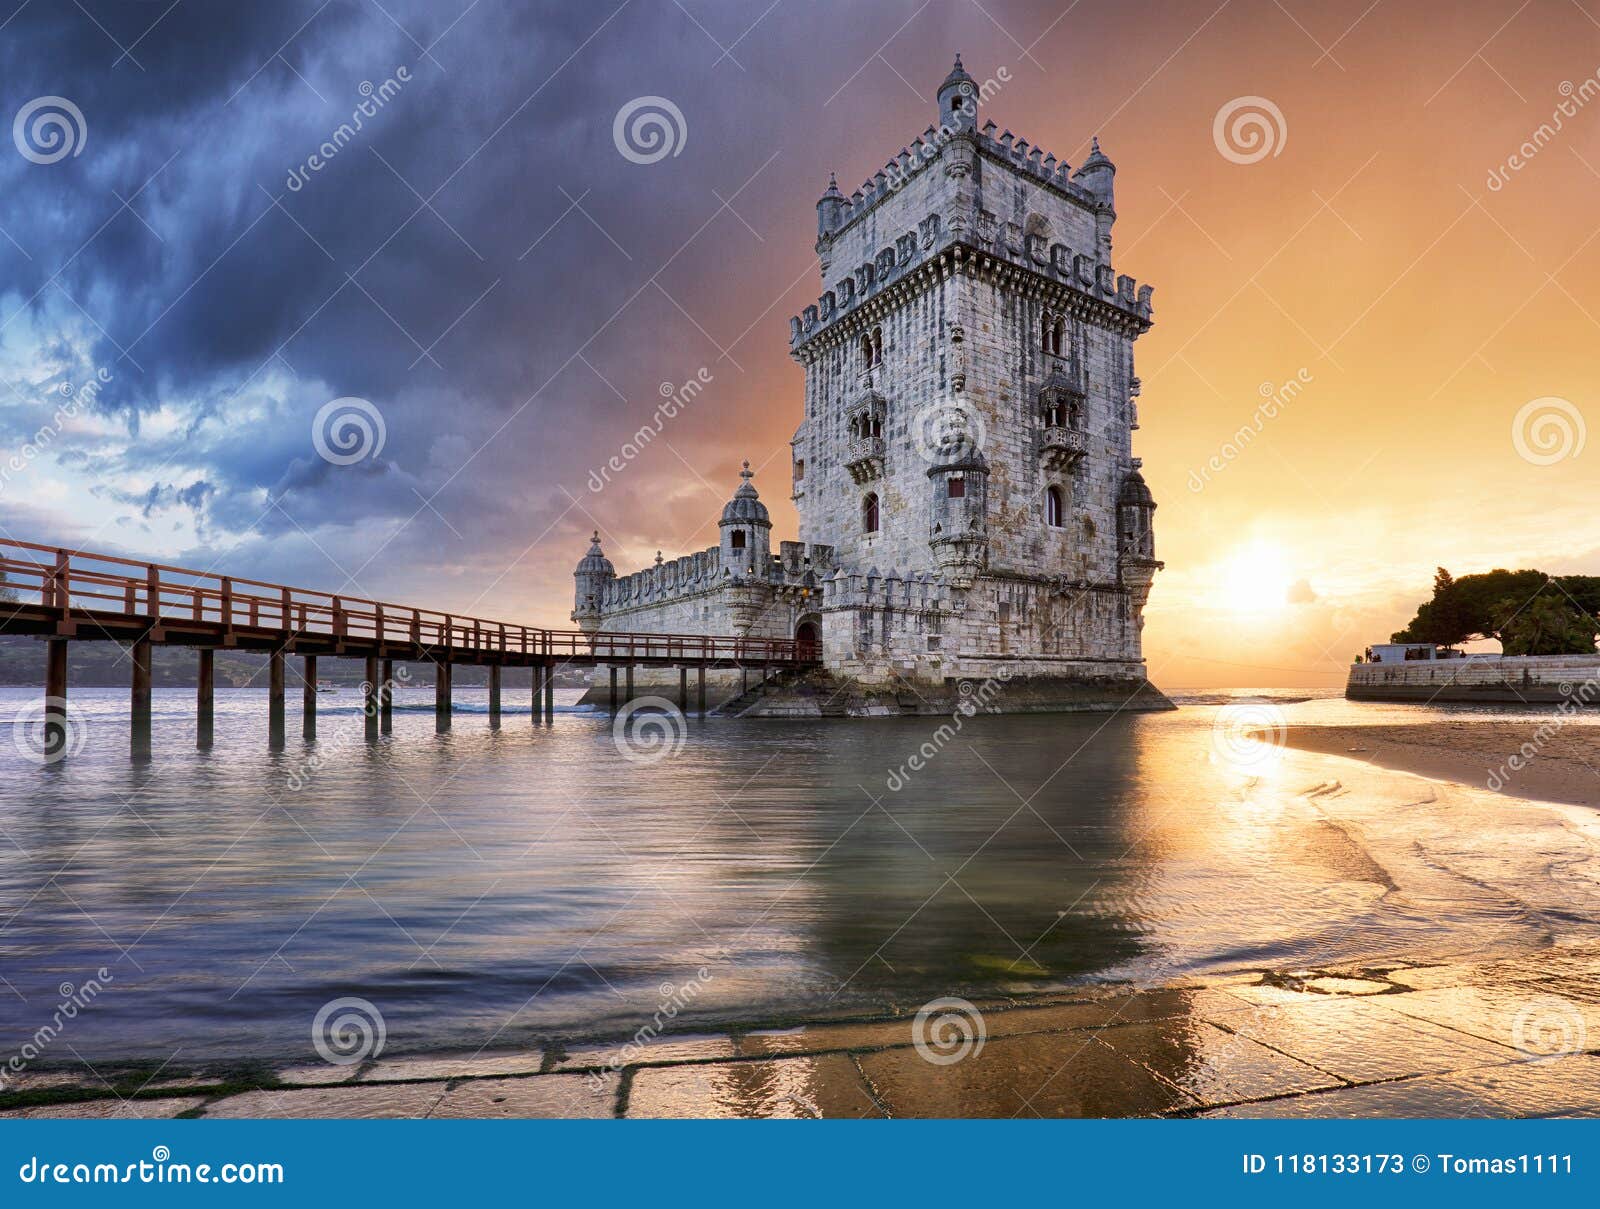 lisbon, belem tower at sunset, lisboa - portugal